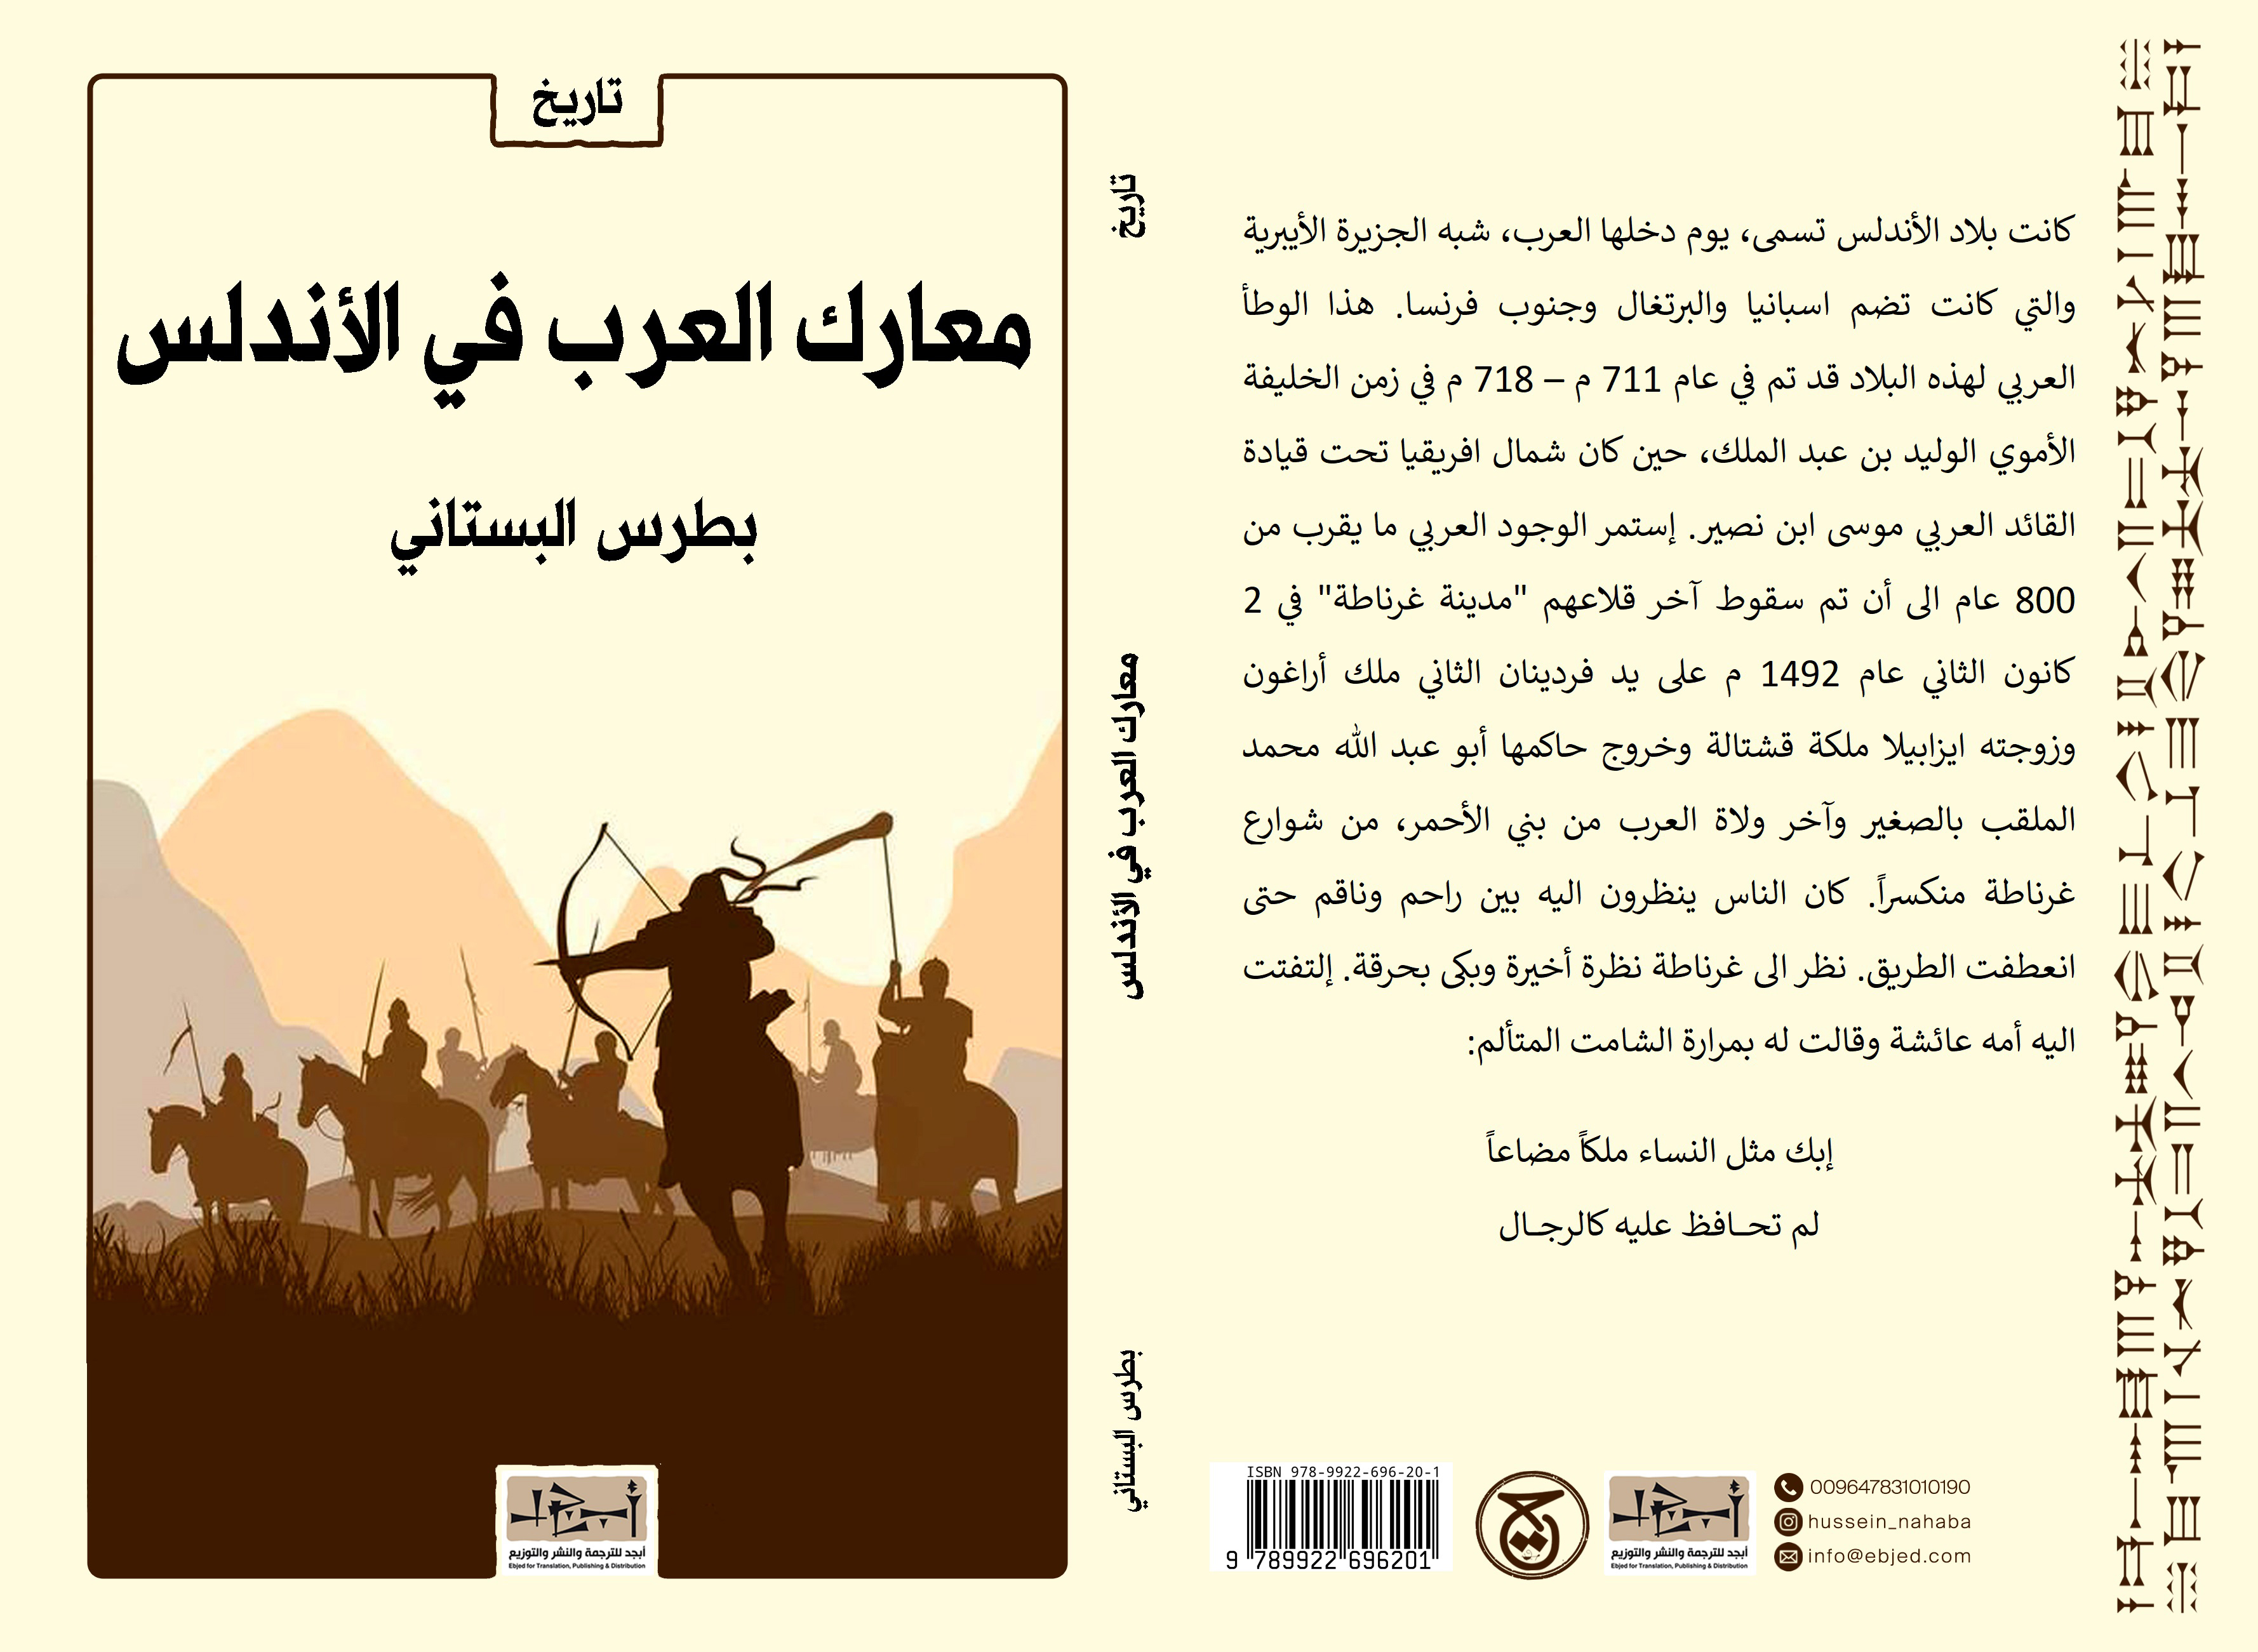 الكتاب: معارك العرب في الأندلس المؤلف: بطرس البستاني التصنيف: تاريخ